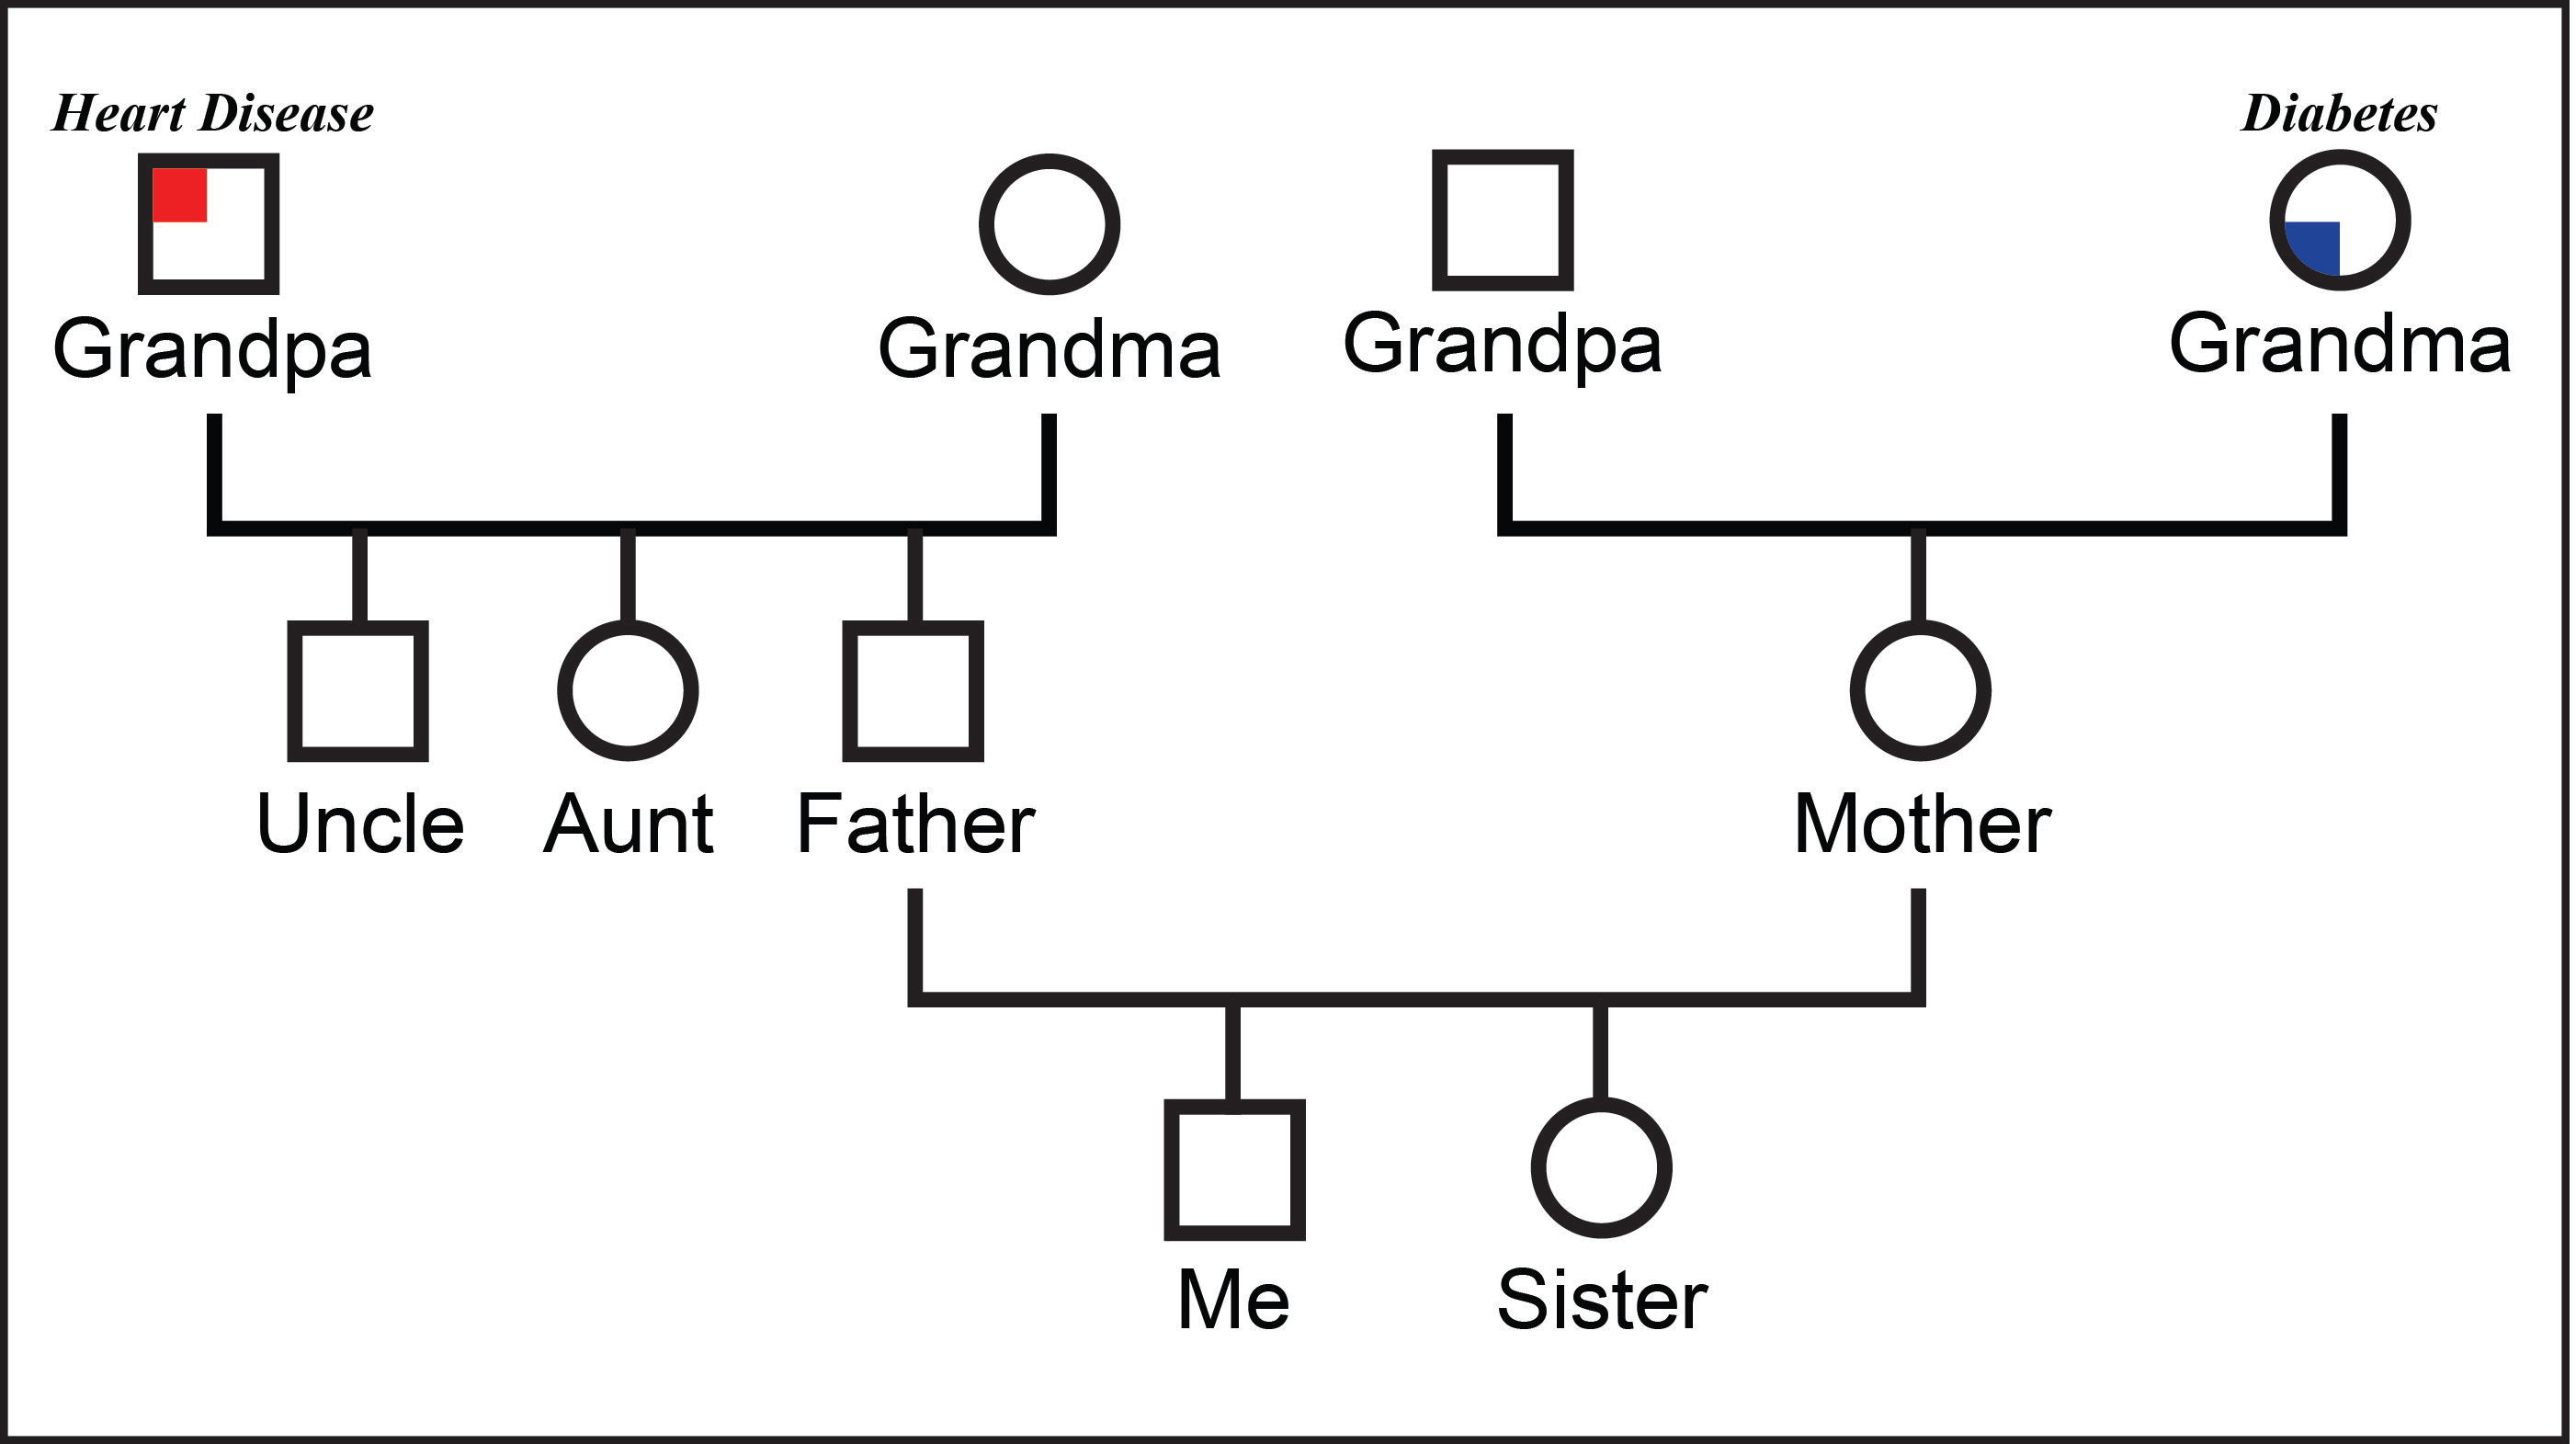 Family Genogram Template